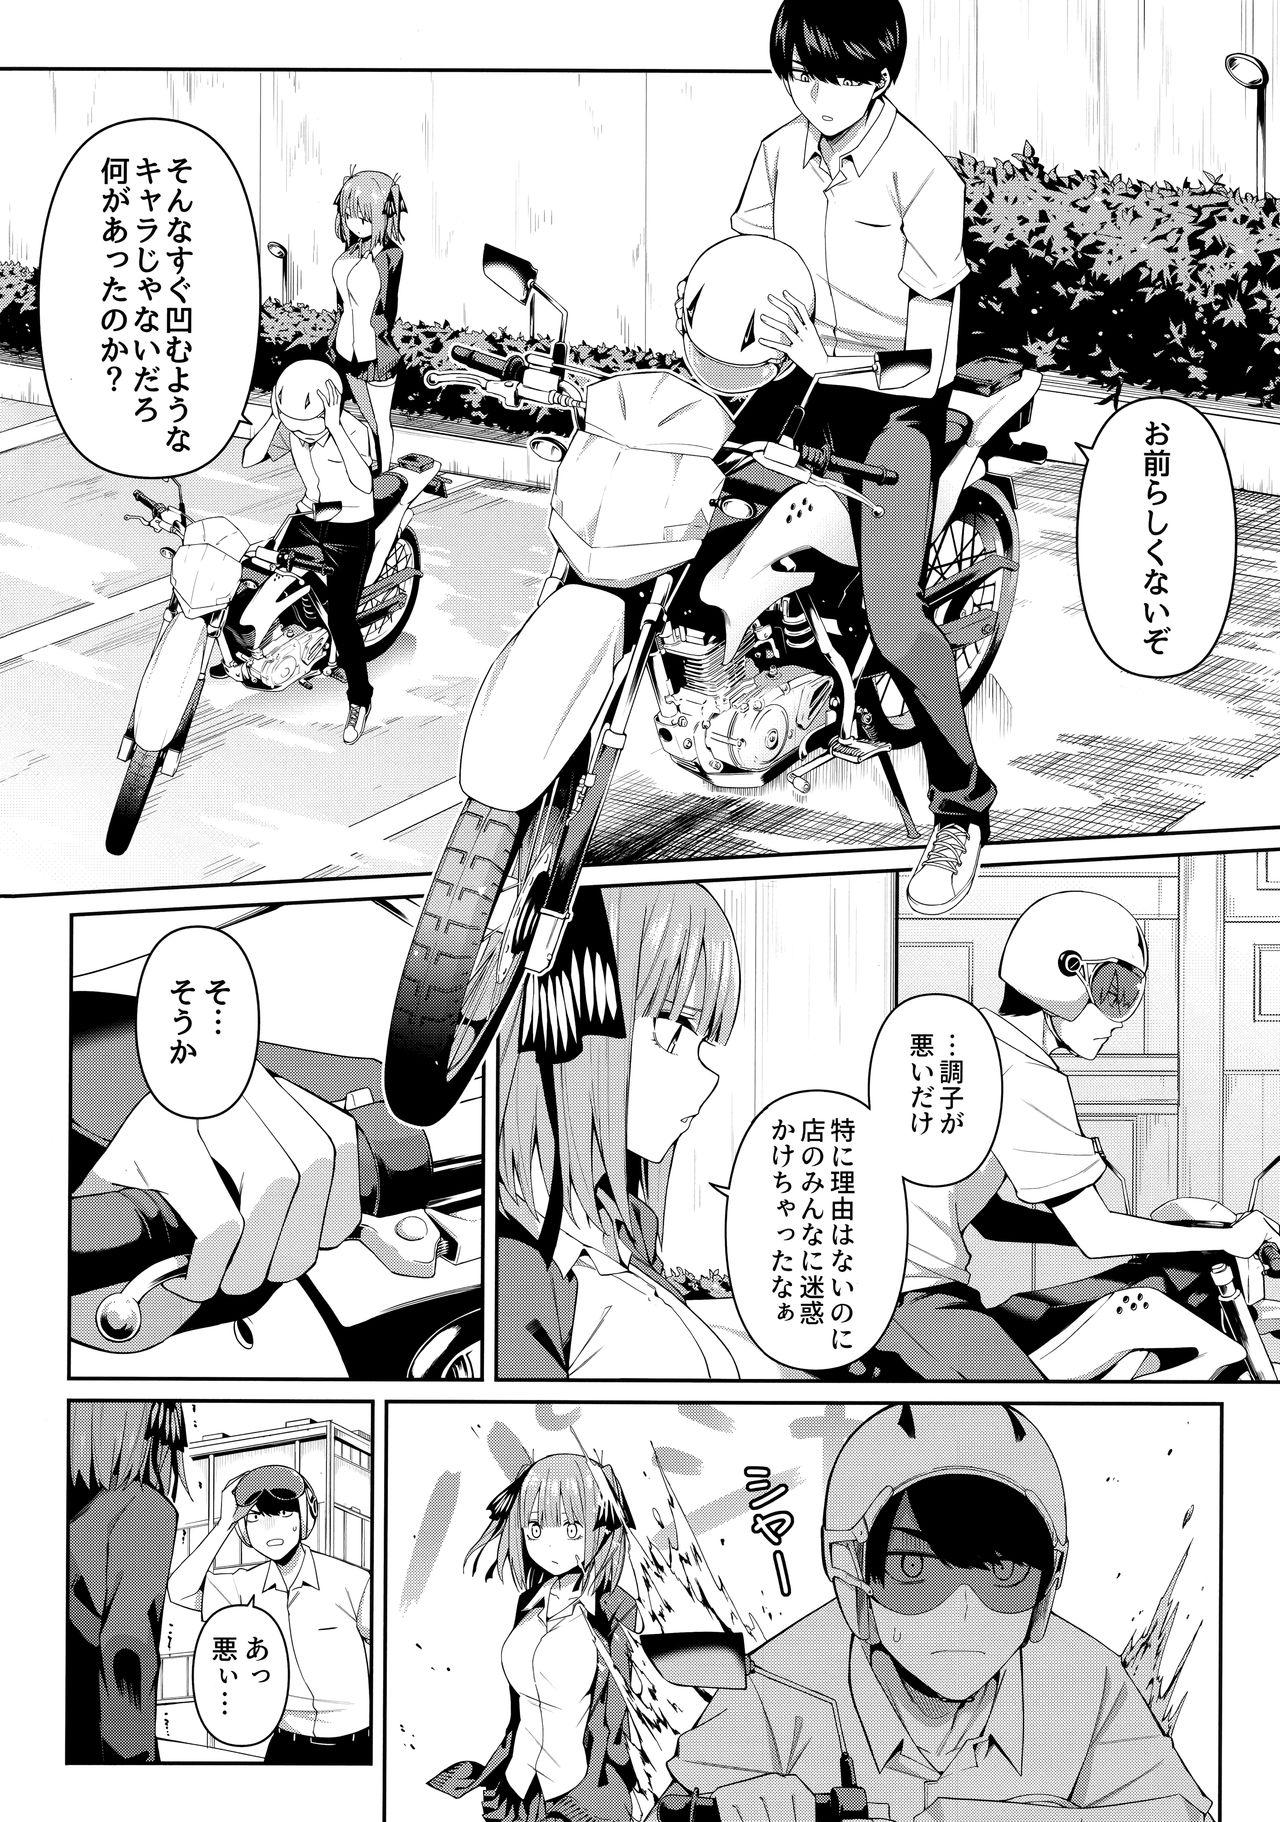 Short Nibun no Yuudou - Gotoubun no hanayome Culonas - Page 5